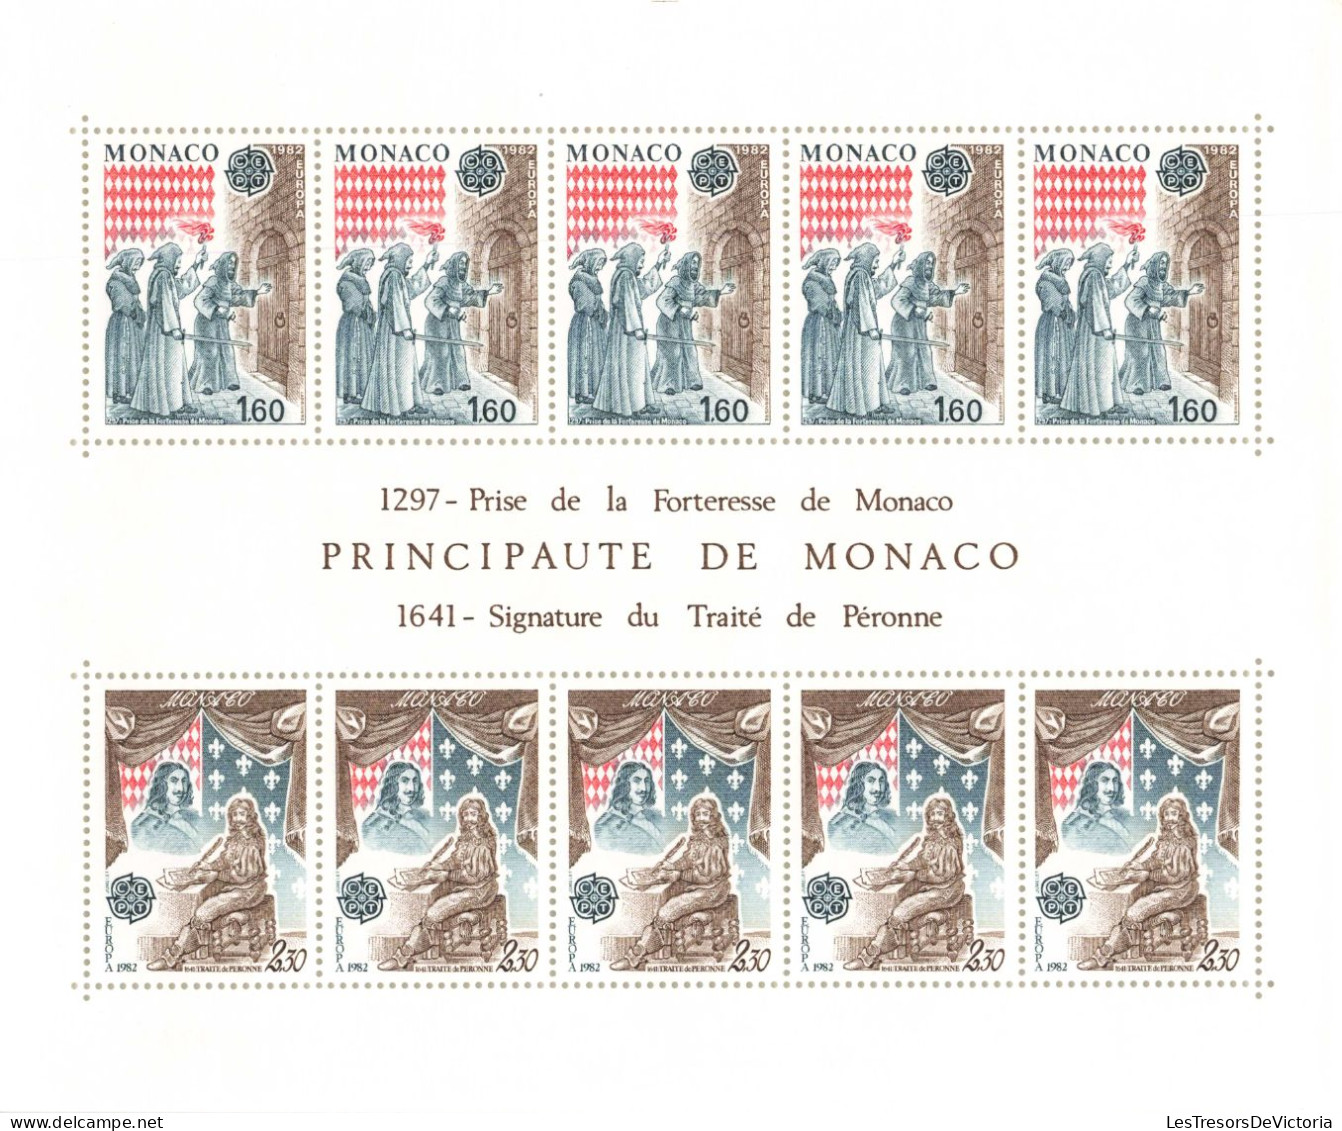 Monaco - Blocs MNH * - 1982 - 1297 Prise De La Forteresse De Monaco - 1641 Signature Du Traité De Péronne - Blocs